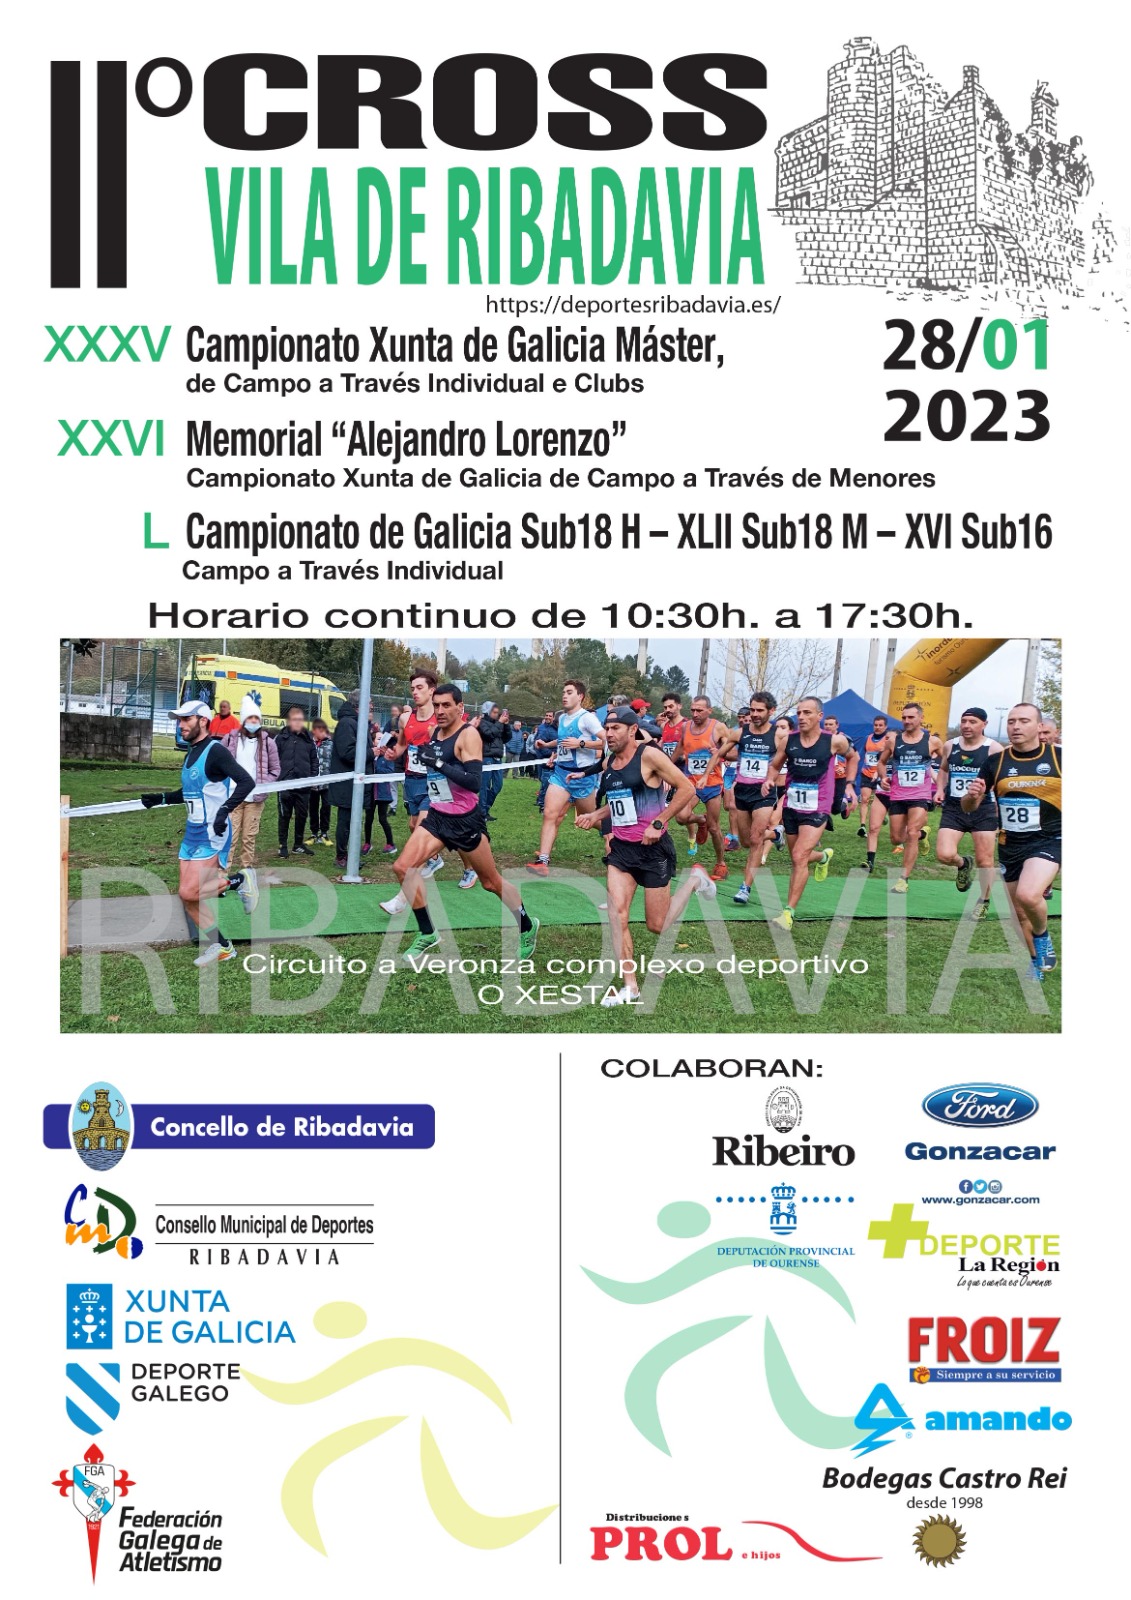 XXXV Campionato Xunta de Galicia Máster de Campo a Través Individual e Clubs